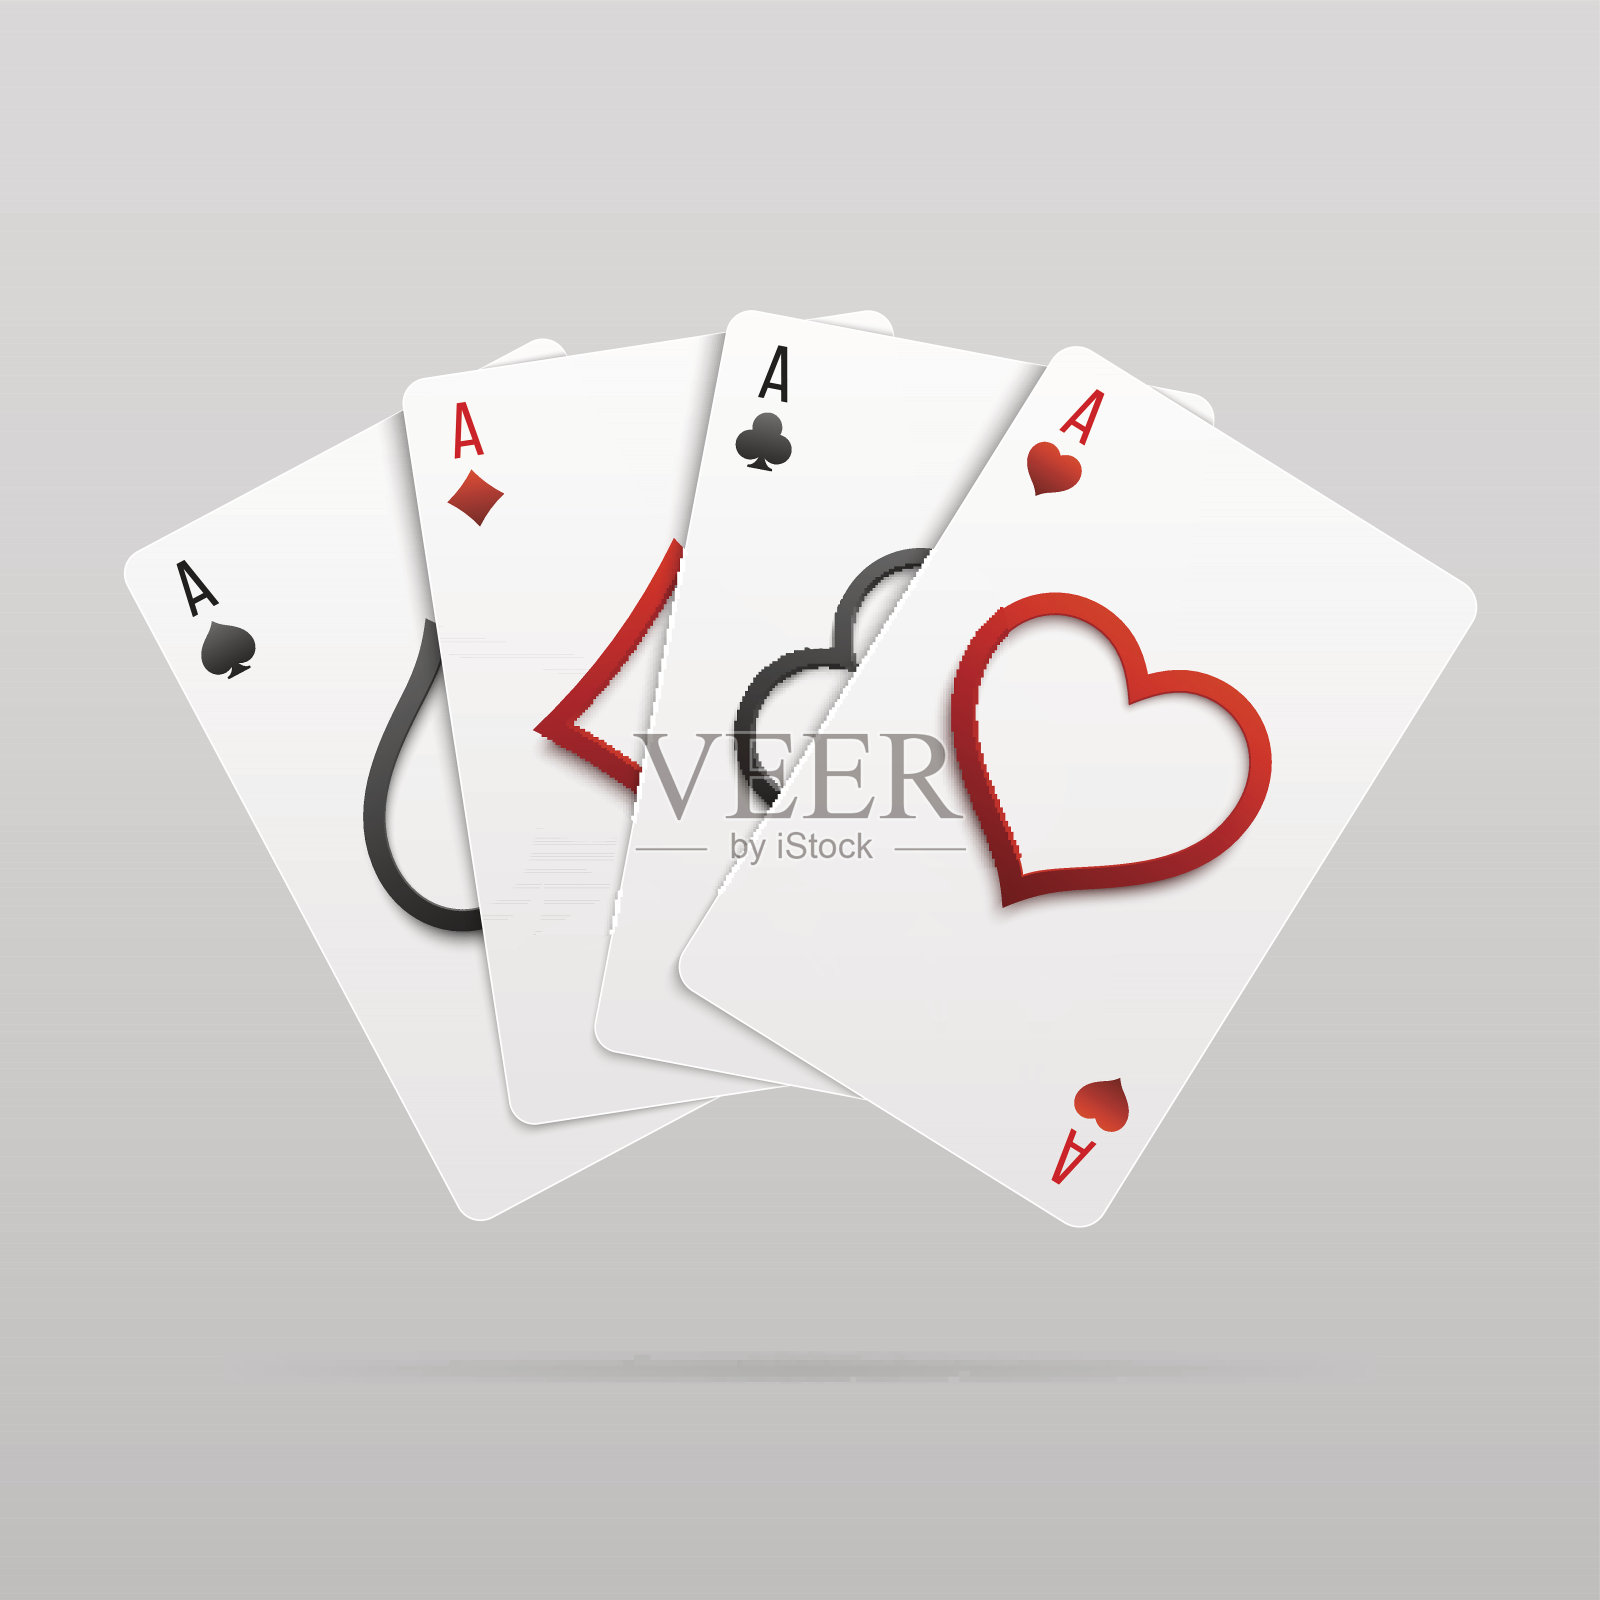 向量组的四个扇形的王牌扑克套装。插画图片素材